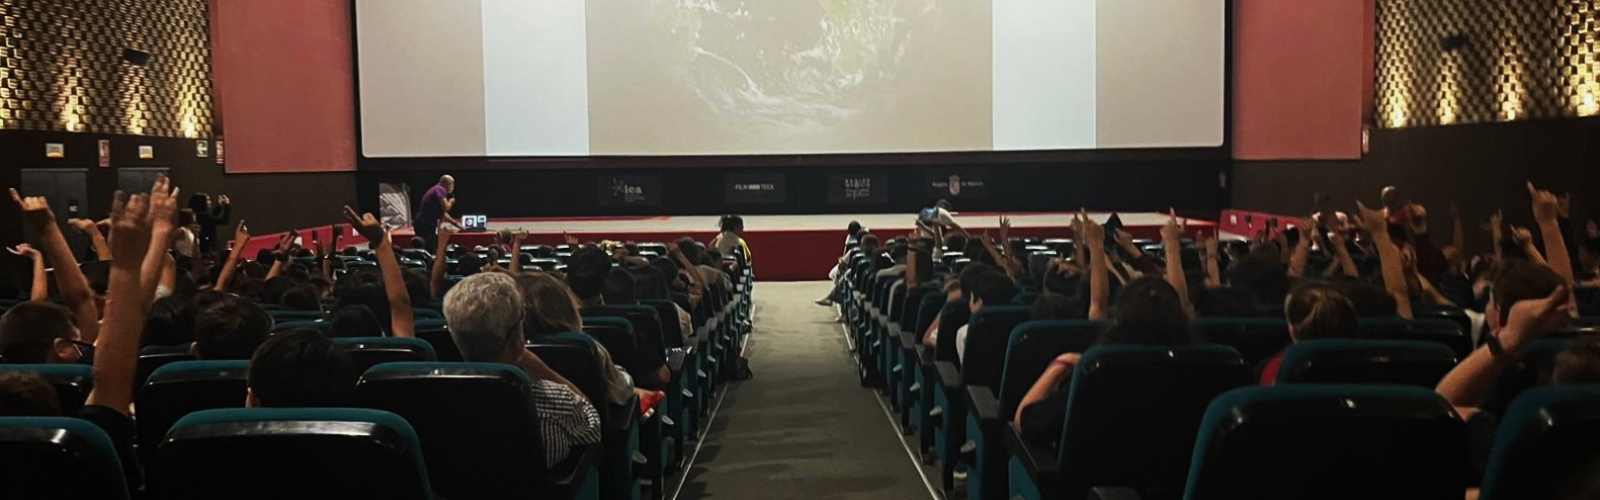 El cinefórum de la UMU 'La ciencia en la gran pantalla' roza el aforo completo en la Filmoteca Regional